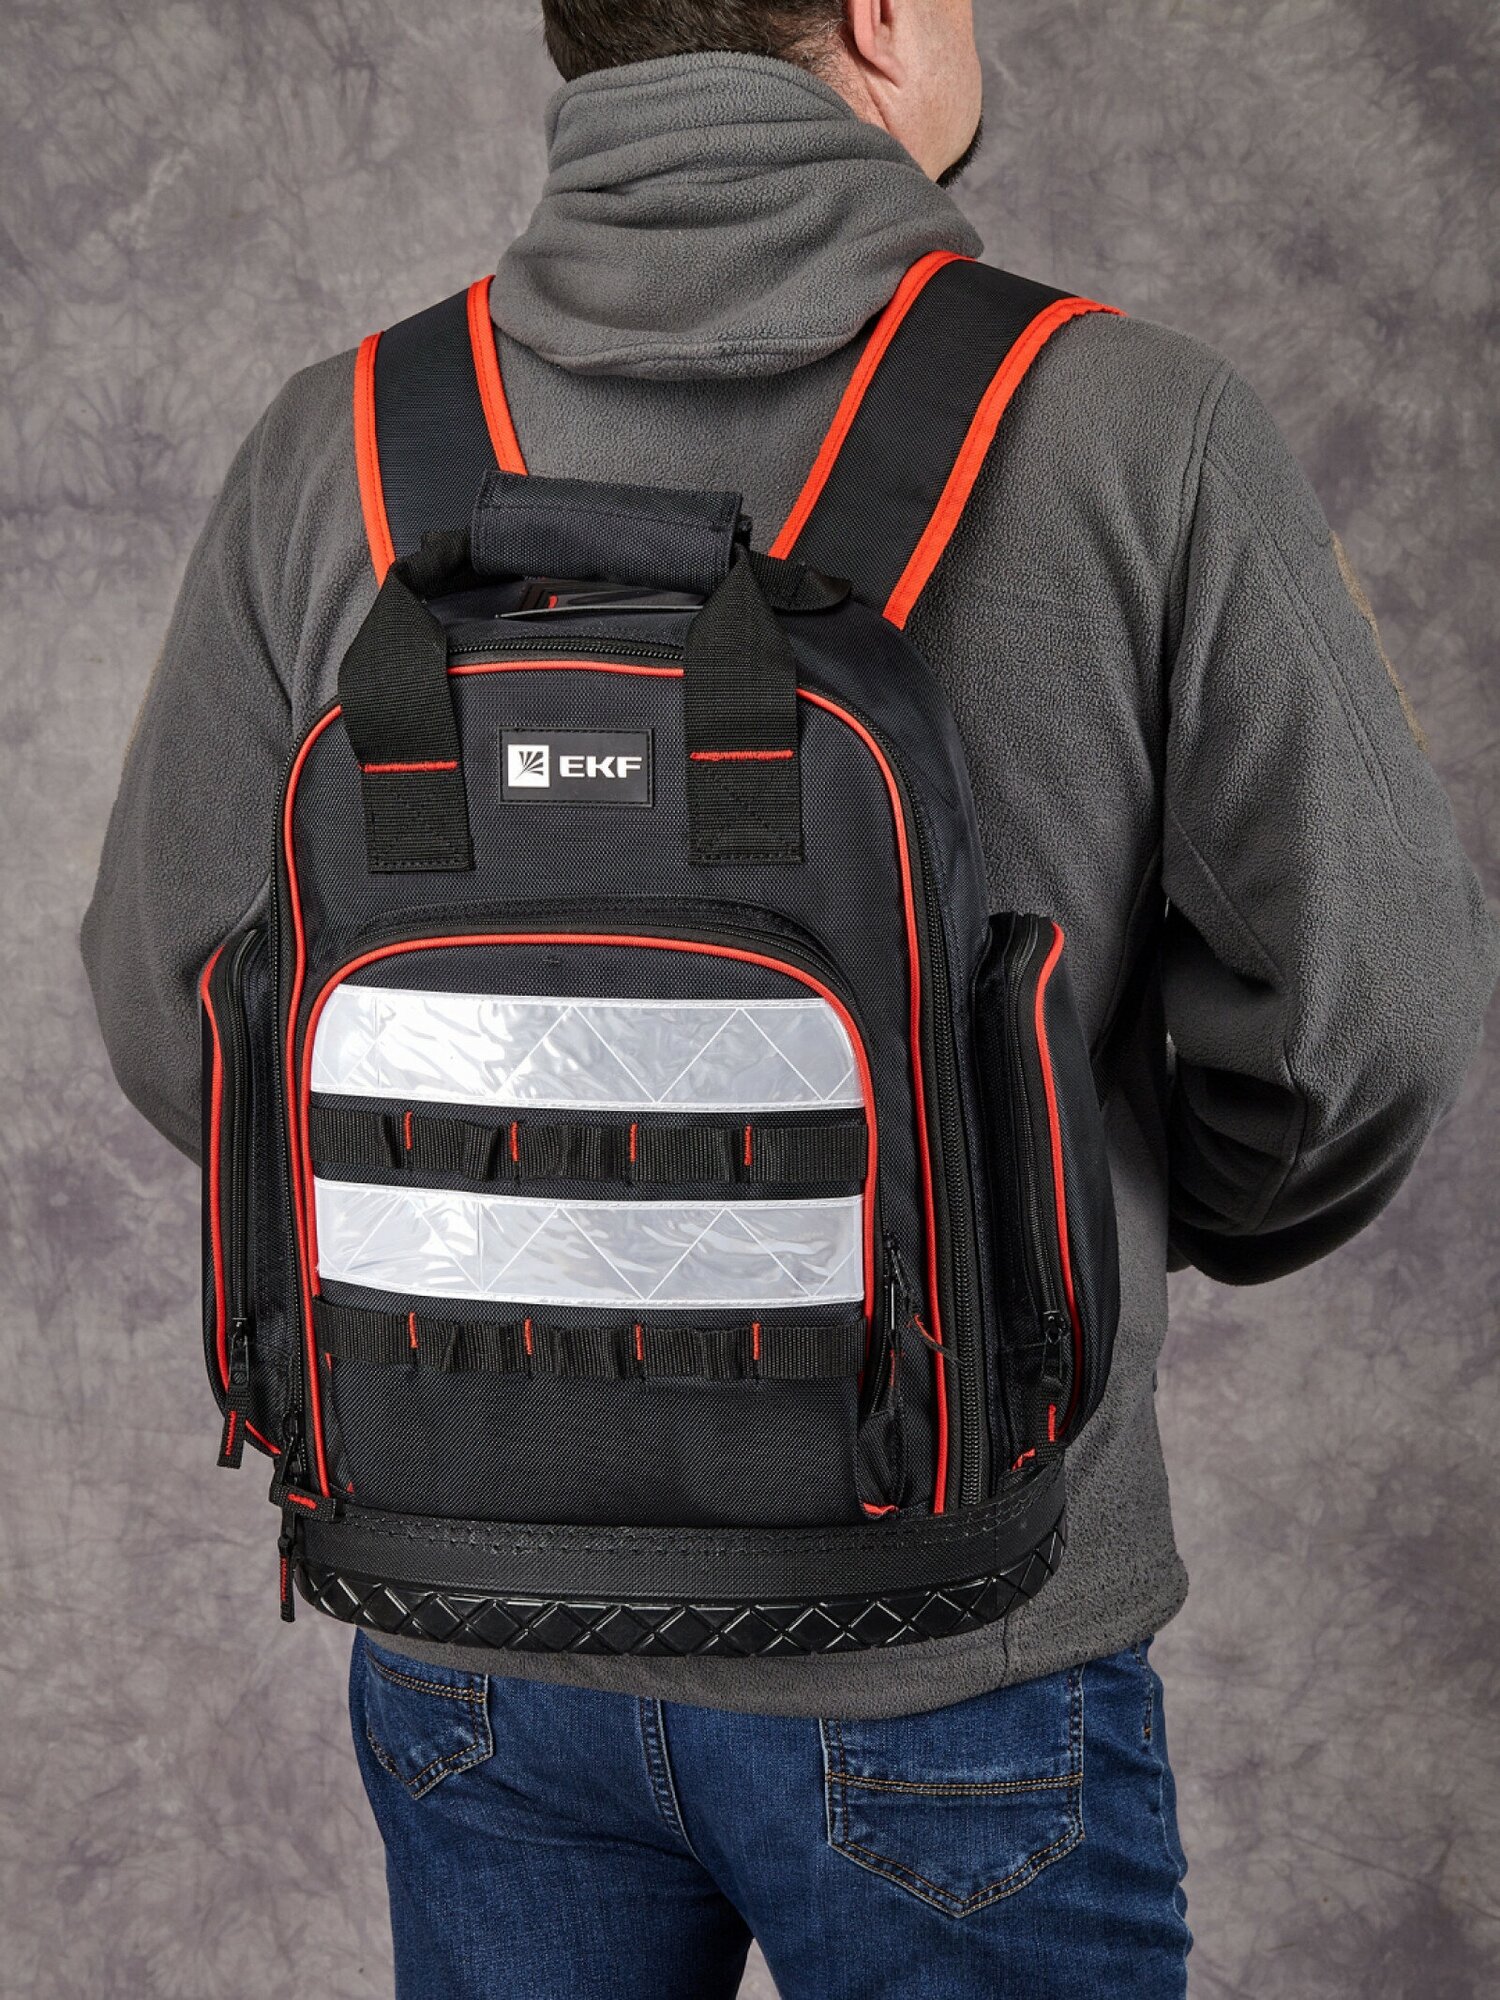 Рюкзак монтажника универсальный с резиновым дном С-07 EKF Professional